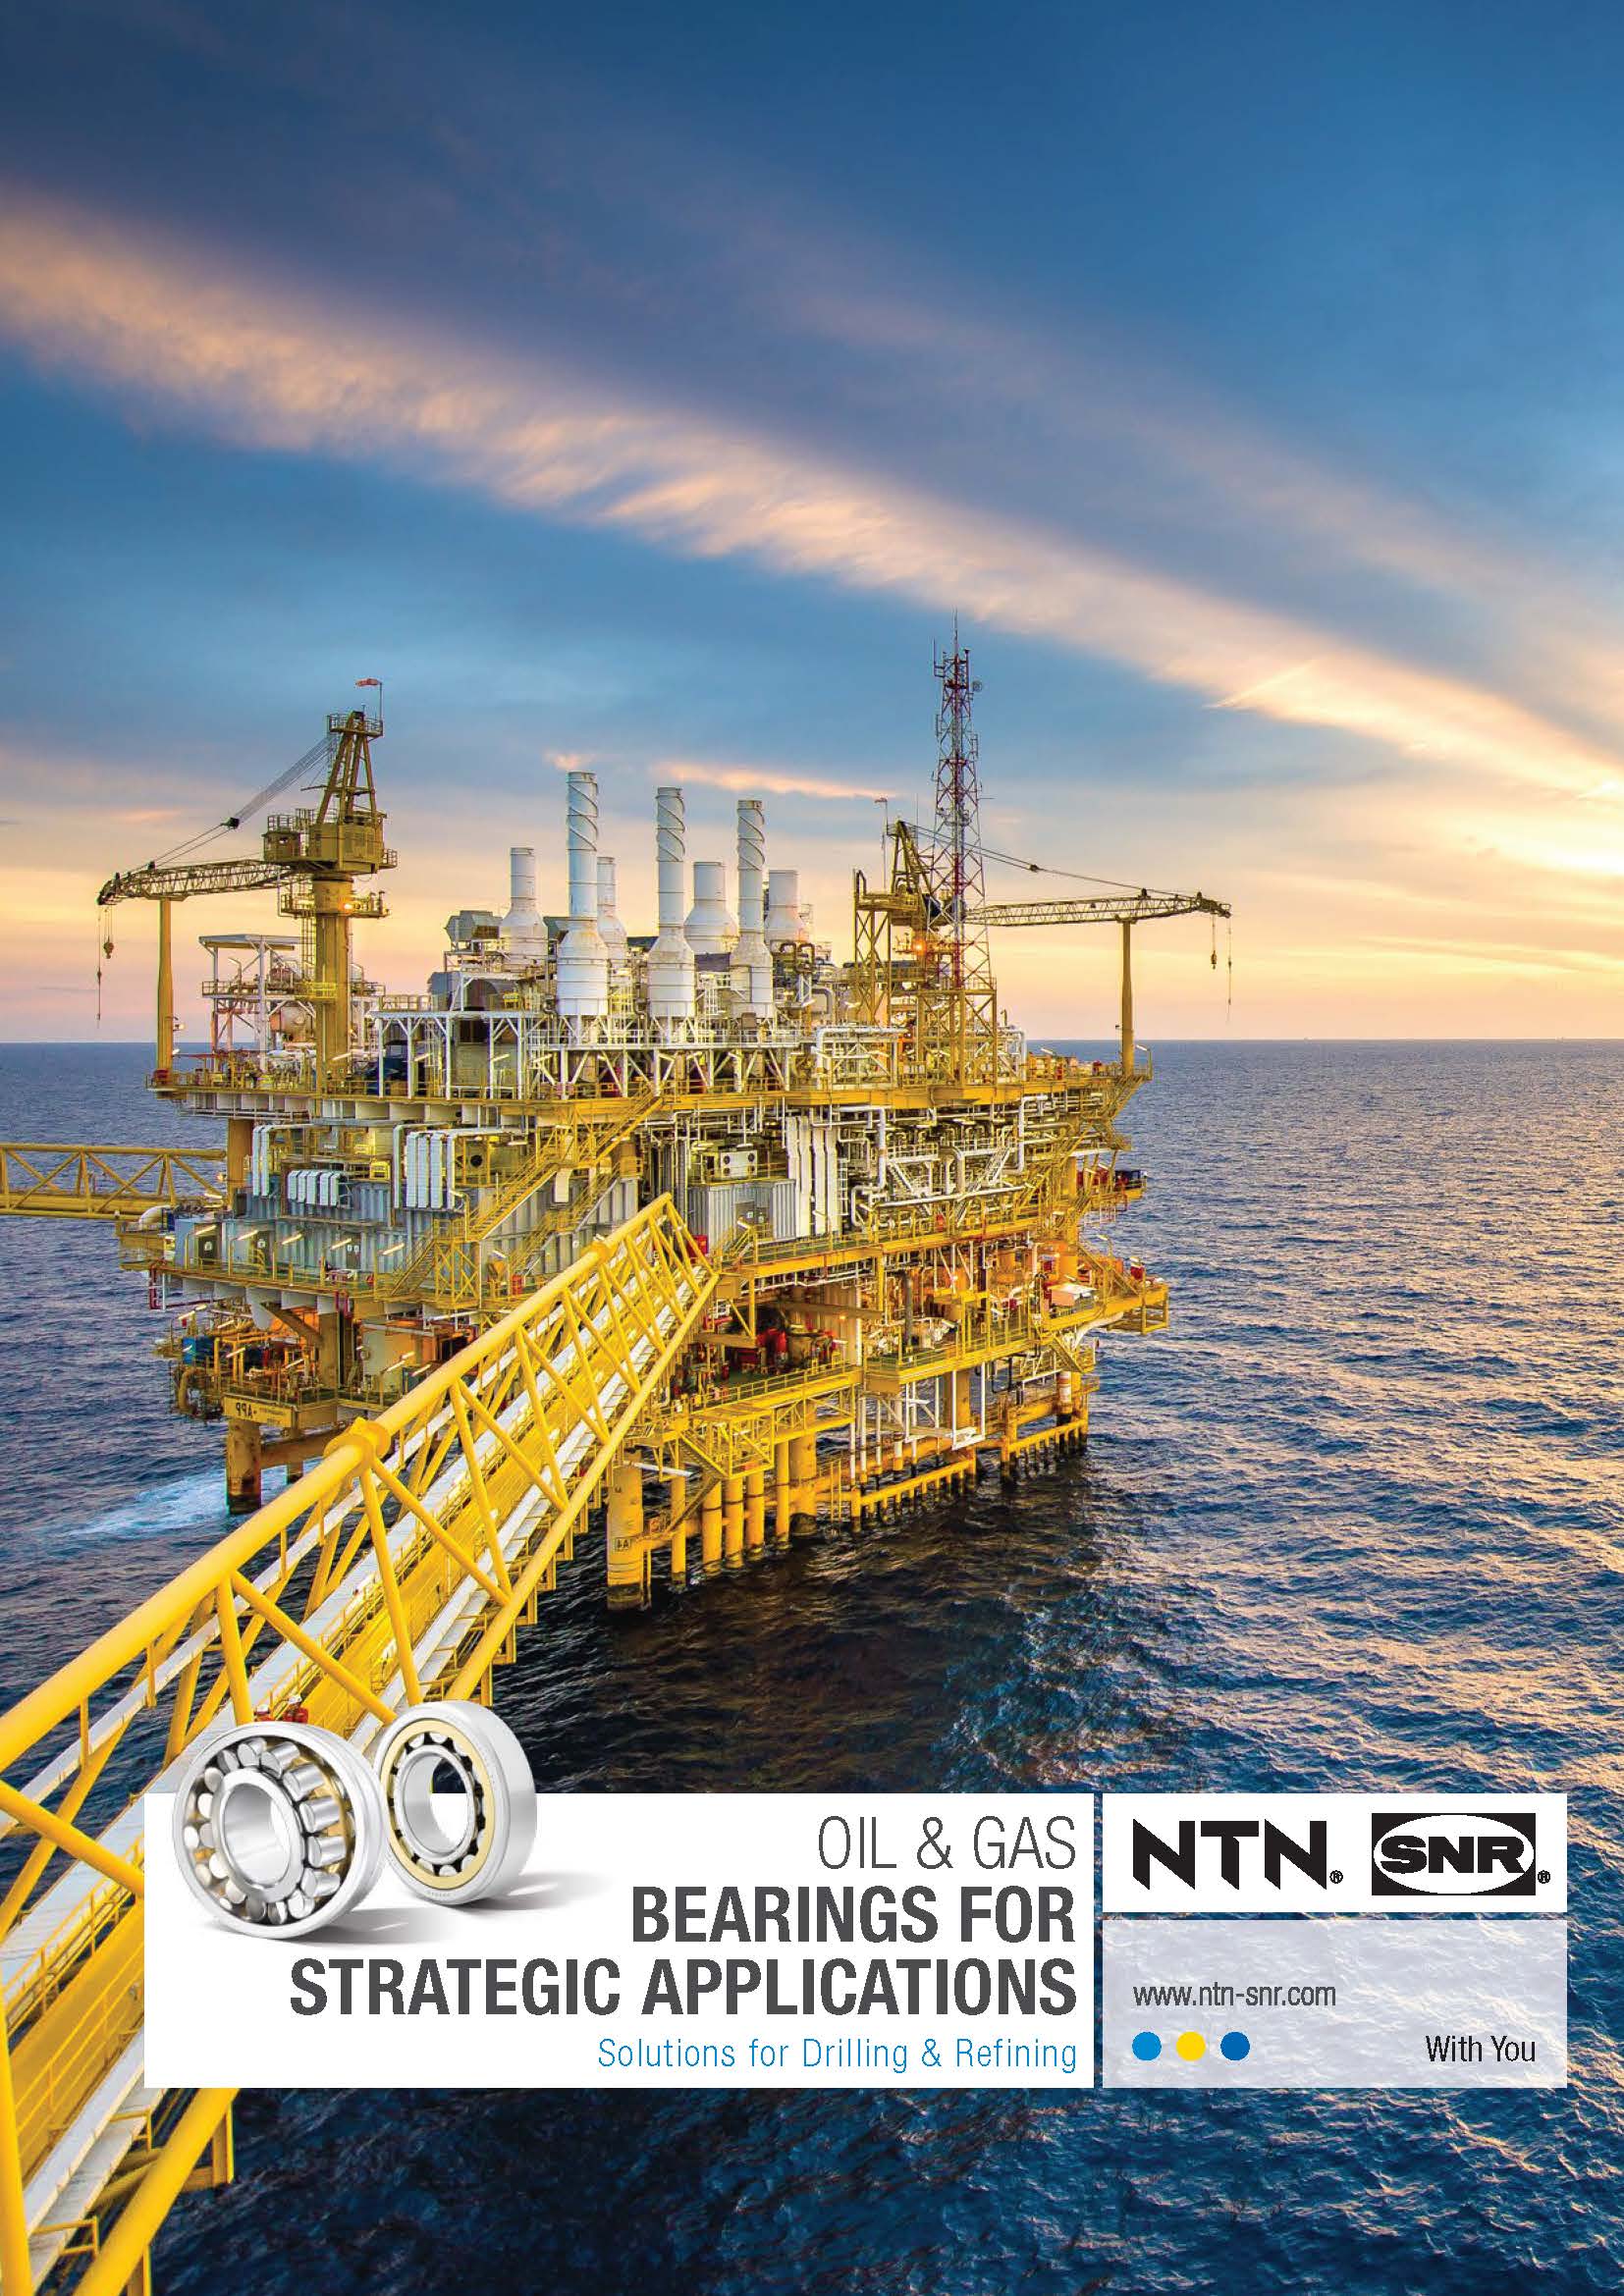 NTN SNR Oil and Gas EN c 1